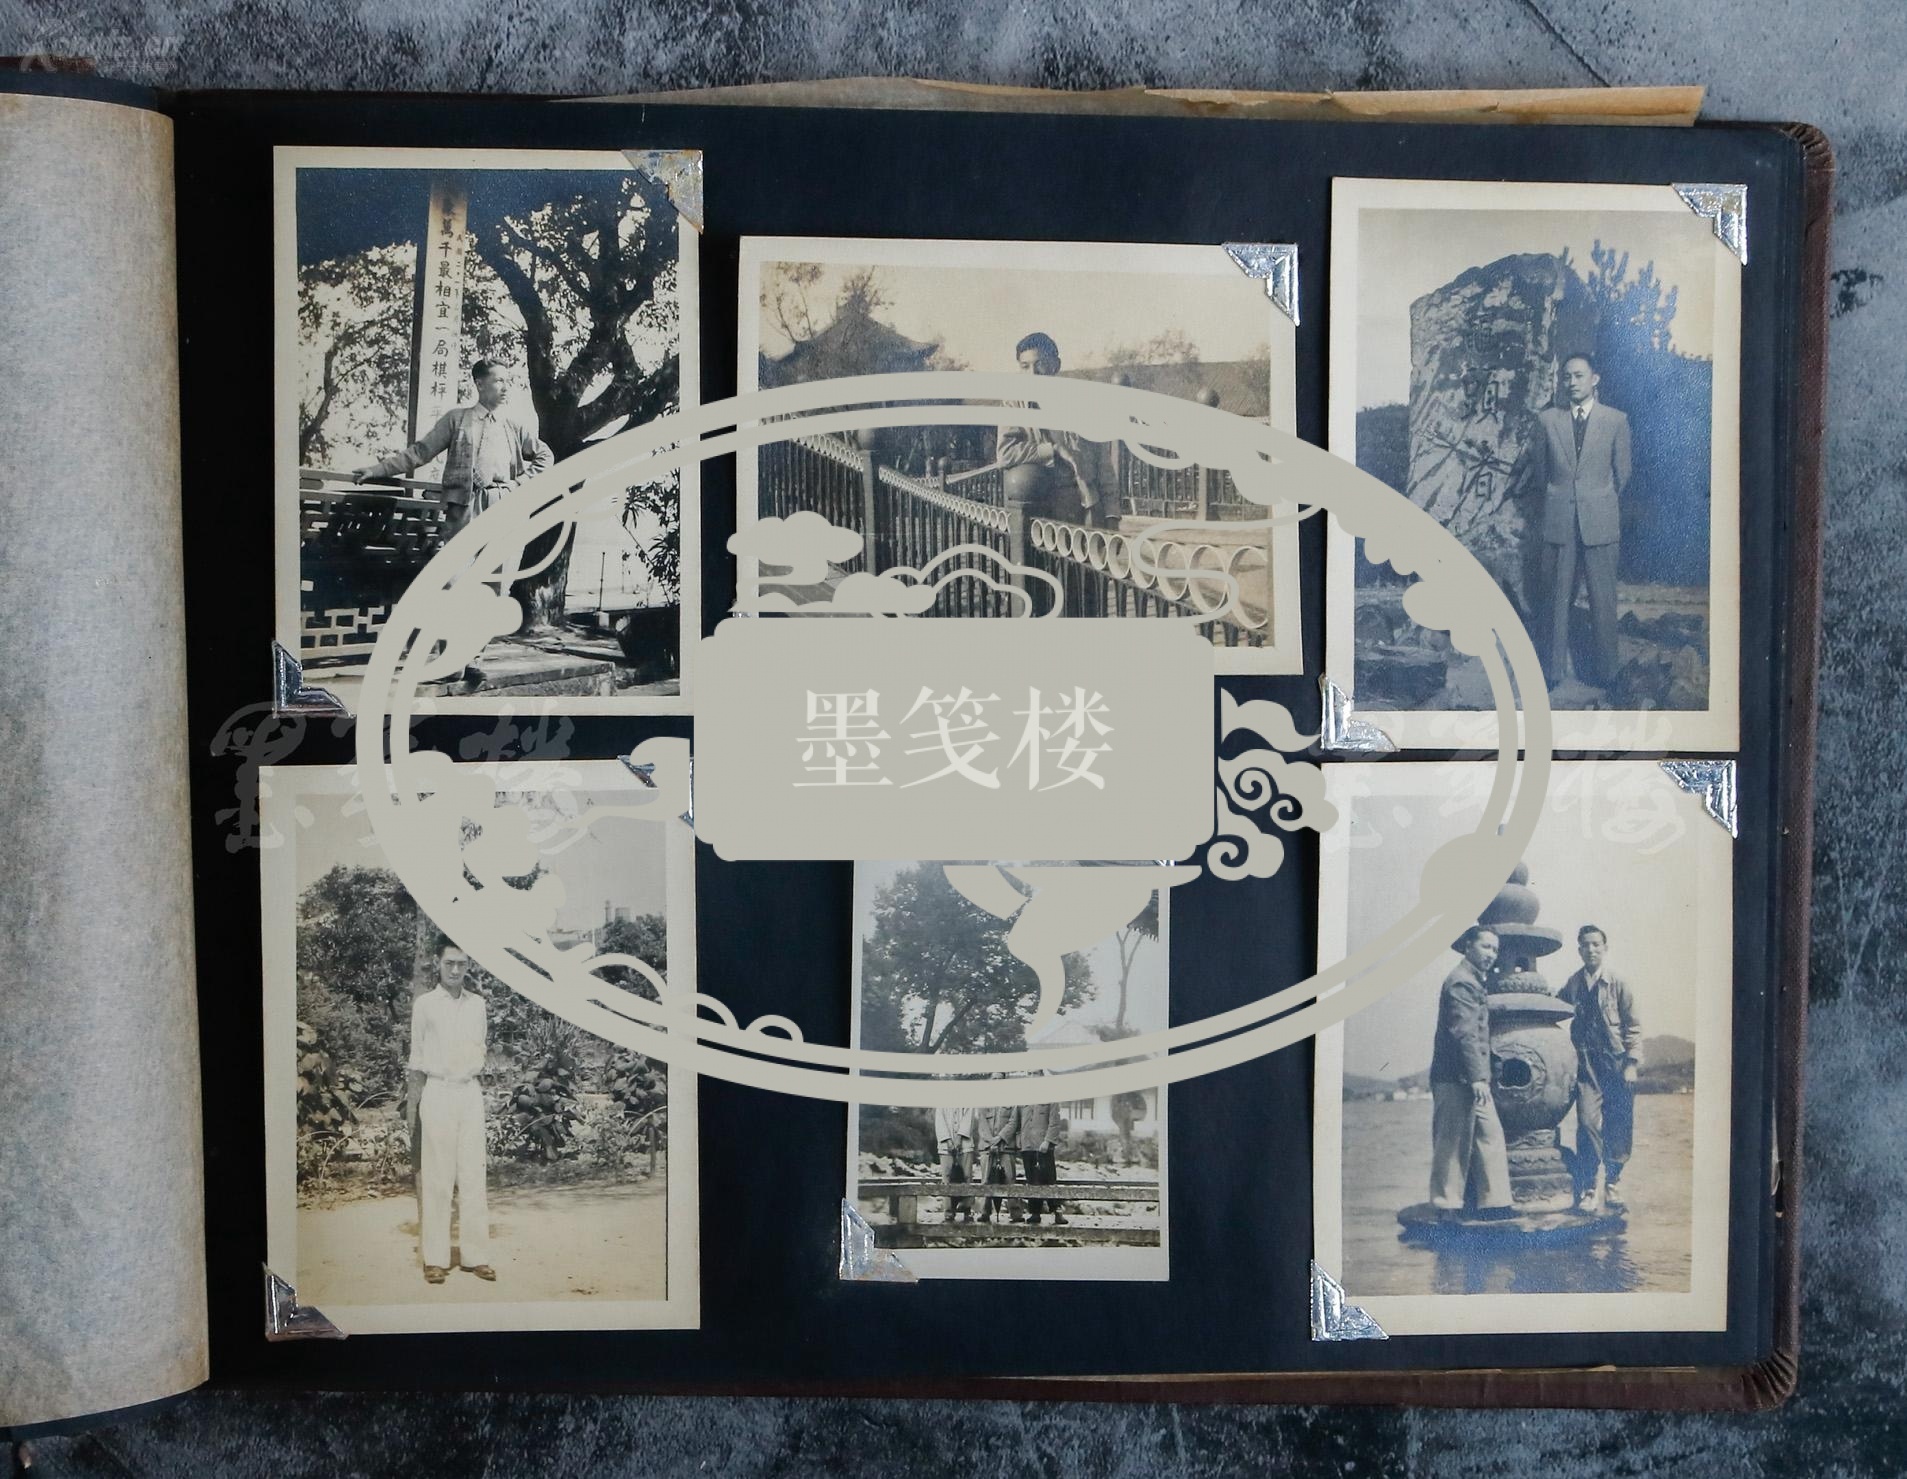 建国初期 家庭生活照相册一件 内收老照片